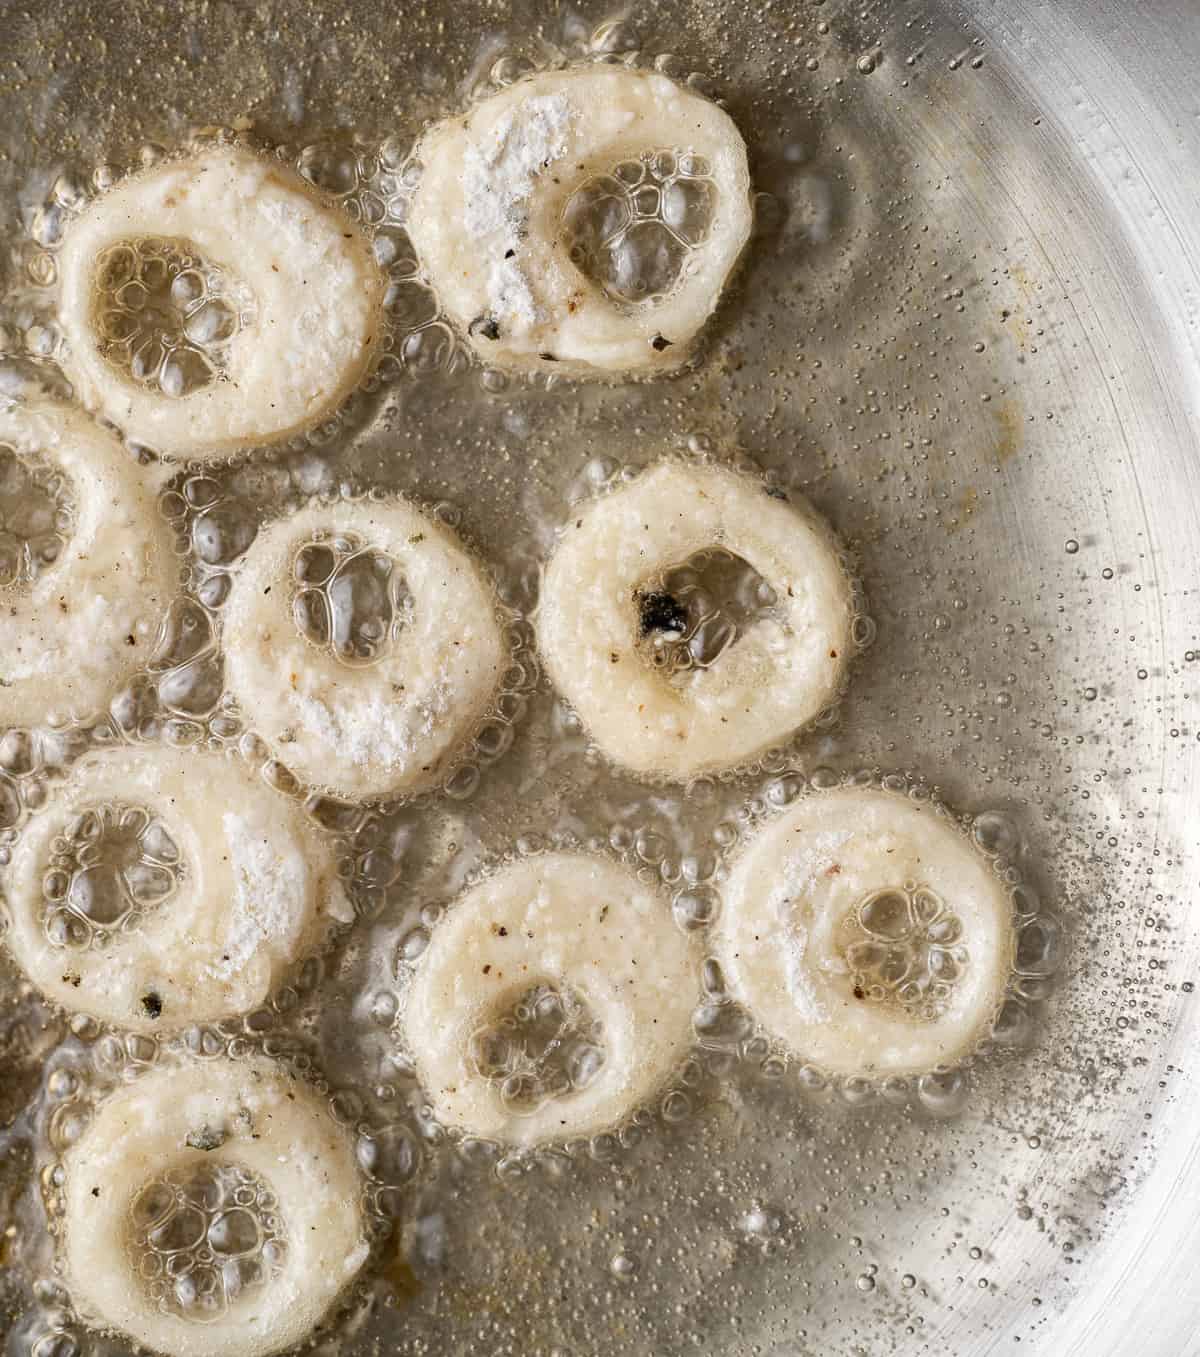 uncooked battered calamari rings in hot oil.